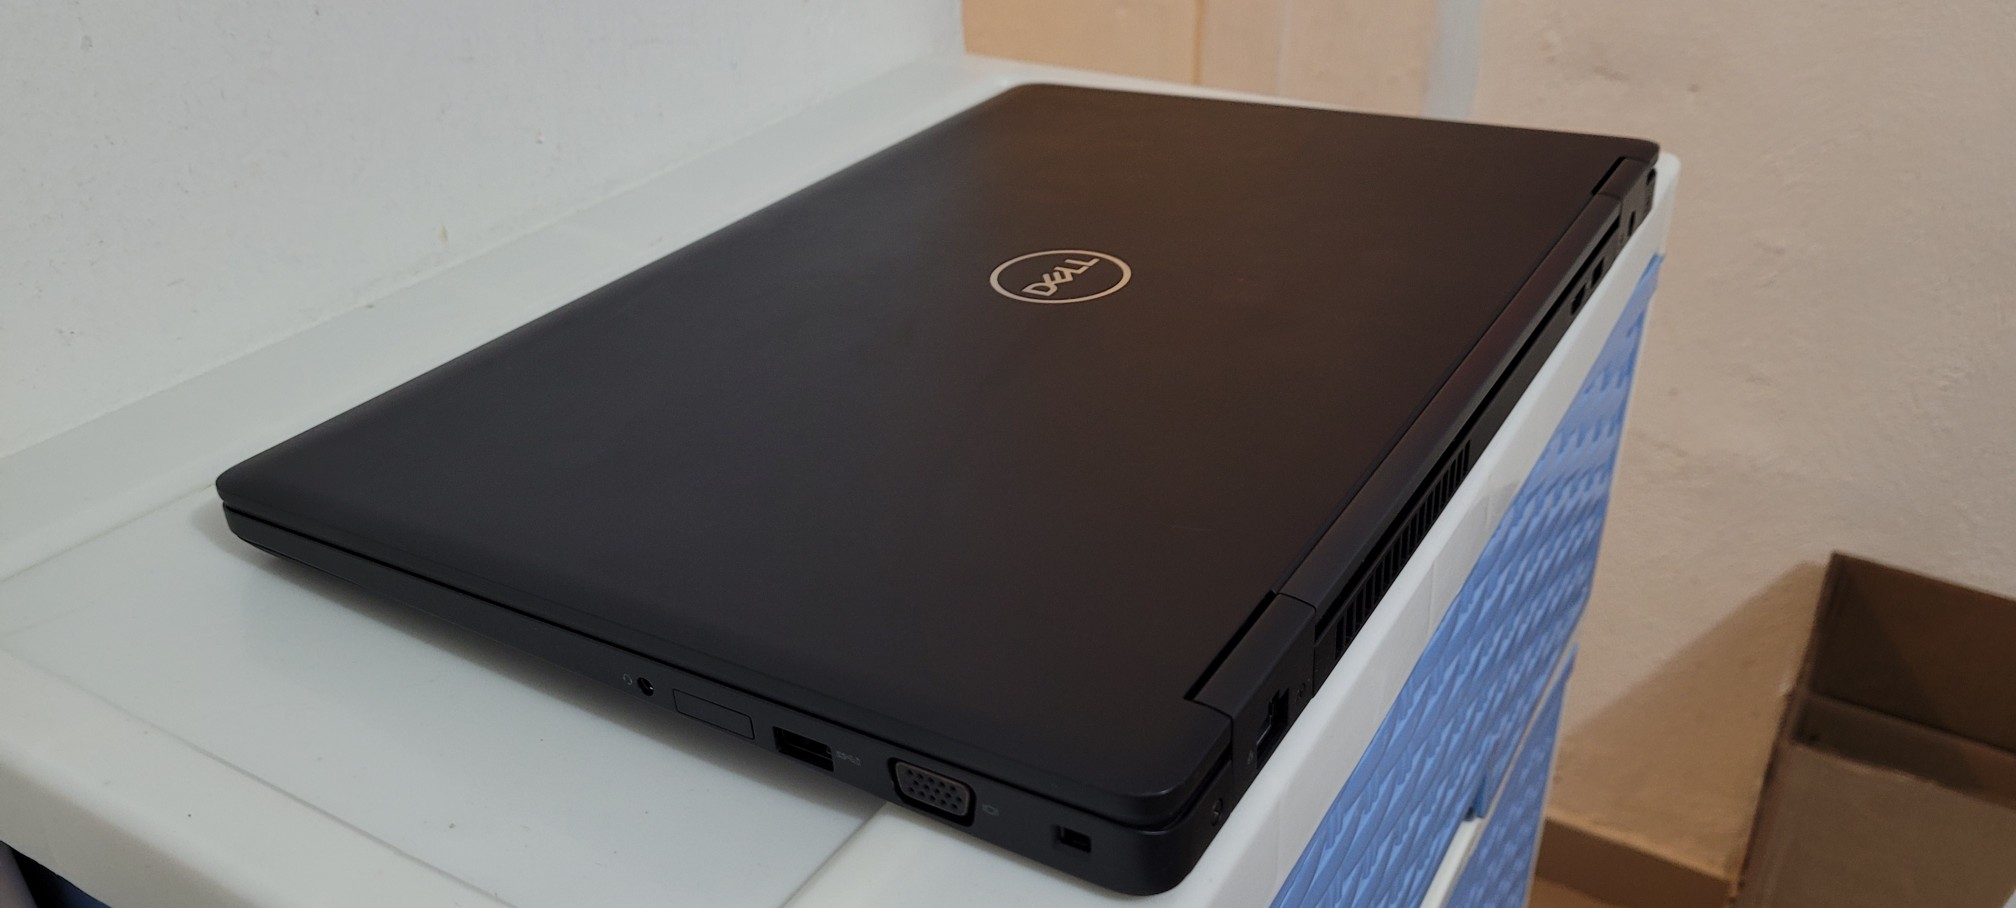 computadoras y laptops - Laptop Dell 5590 17 Pulg Core i5 8va Gen Ram 16gb ddr4 Disco 512gb SSD Solido 2